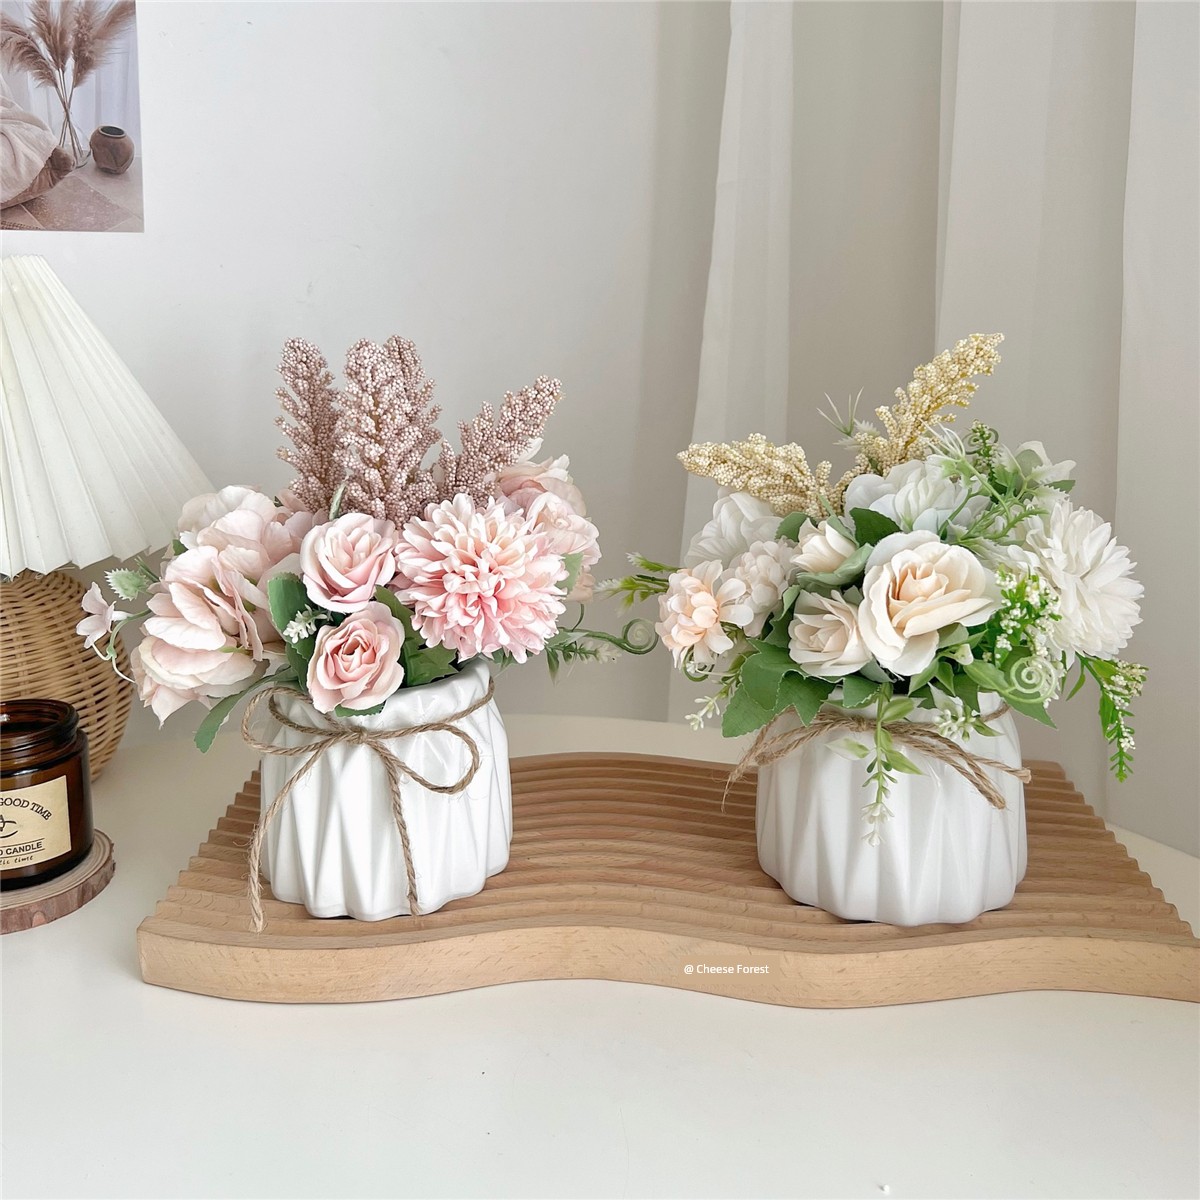 北歐風格仿真花盆栽搭配陶瓷麻繩花瓶居家裝飾假花擺件 (8.3折)